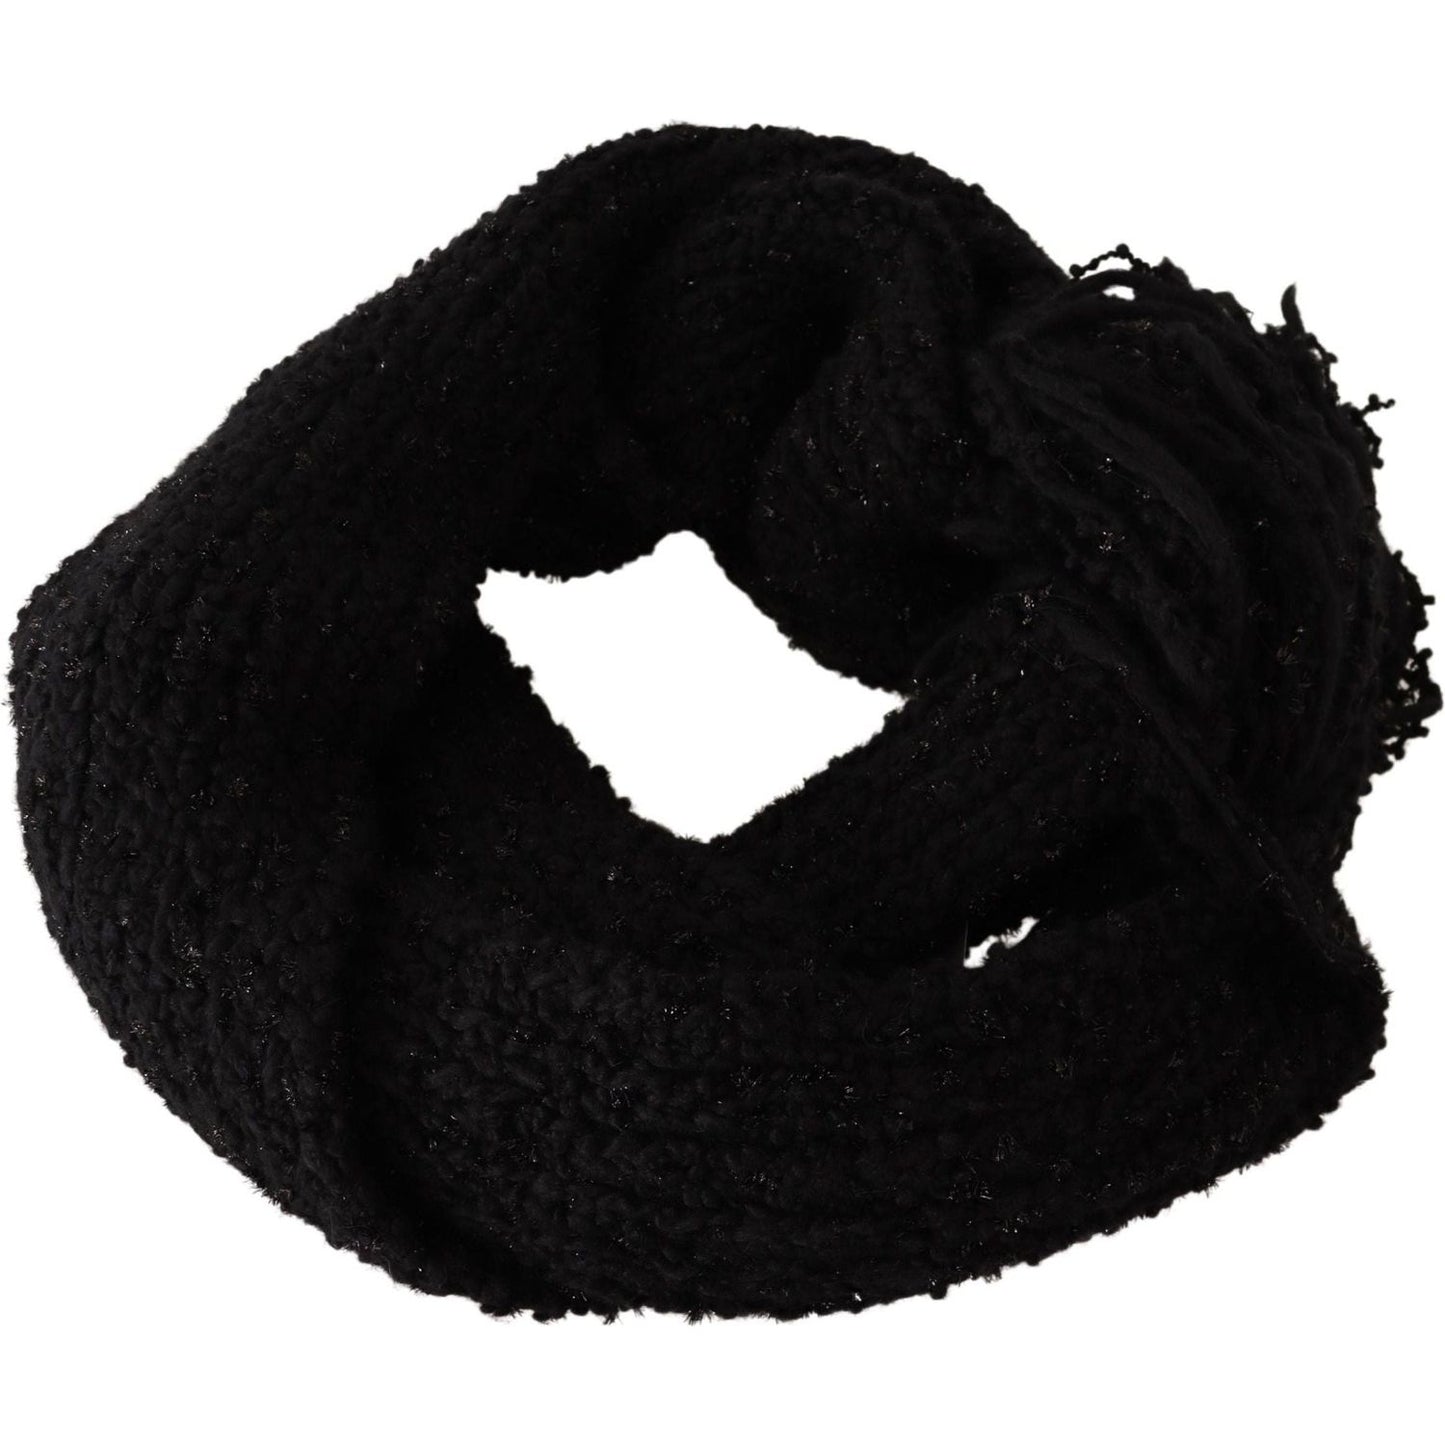 Dolce & Gabbana Black Virgin Wool Knitted Wrap Shawl Scarf black-virgin-wool-knitted-wrap-shawl-scarf IMG_8804-25d64753-a6d.jpg